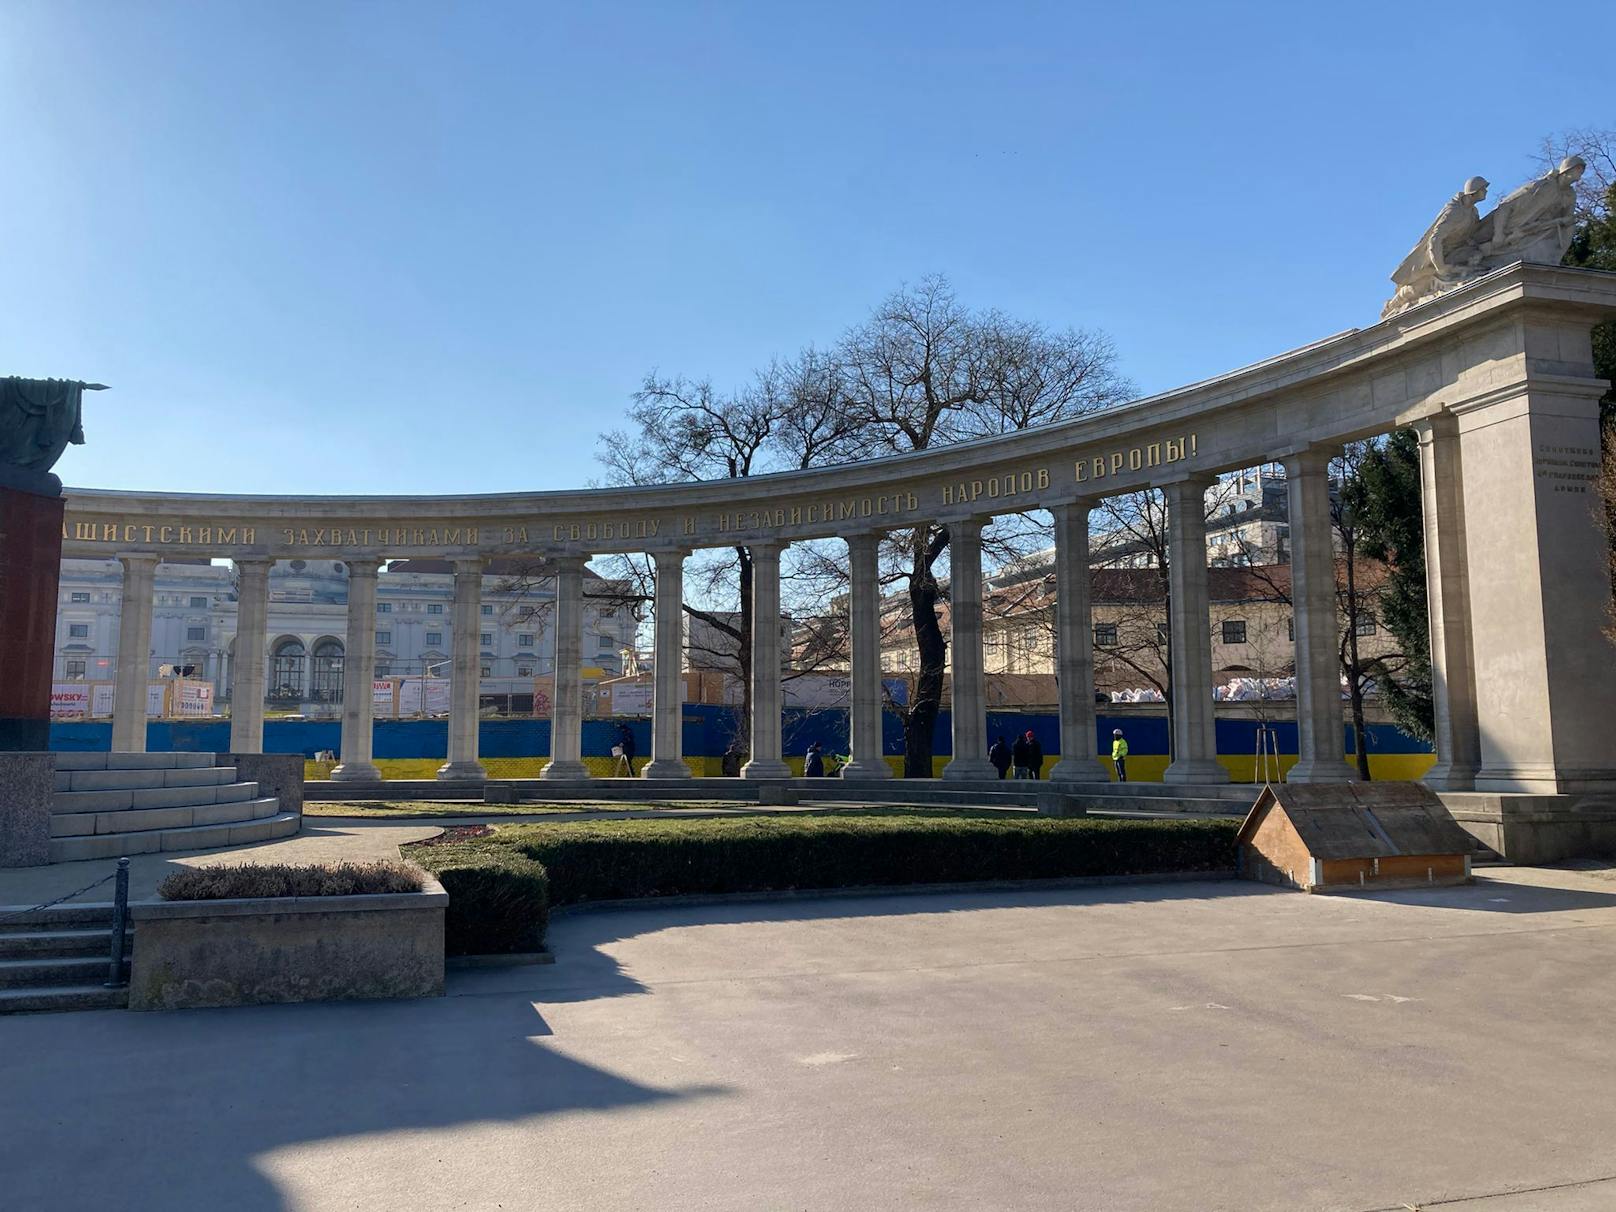 Anfang März erstrahlte eine Mauer hinter dem Russendenkmal in blau-gelbem Glanz.